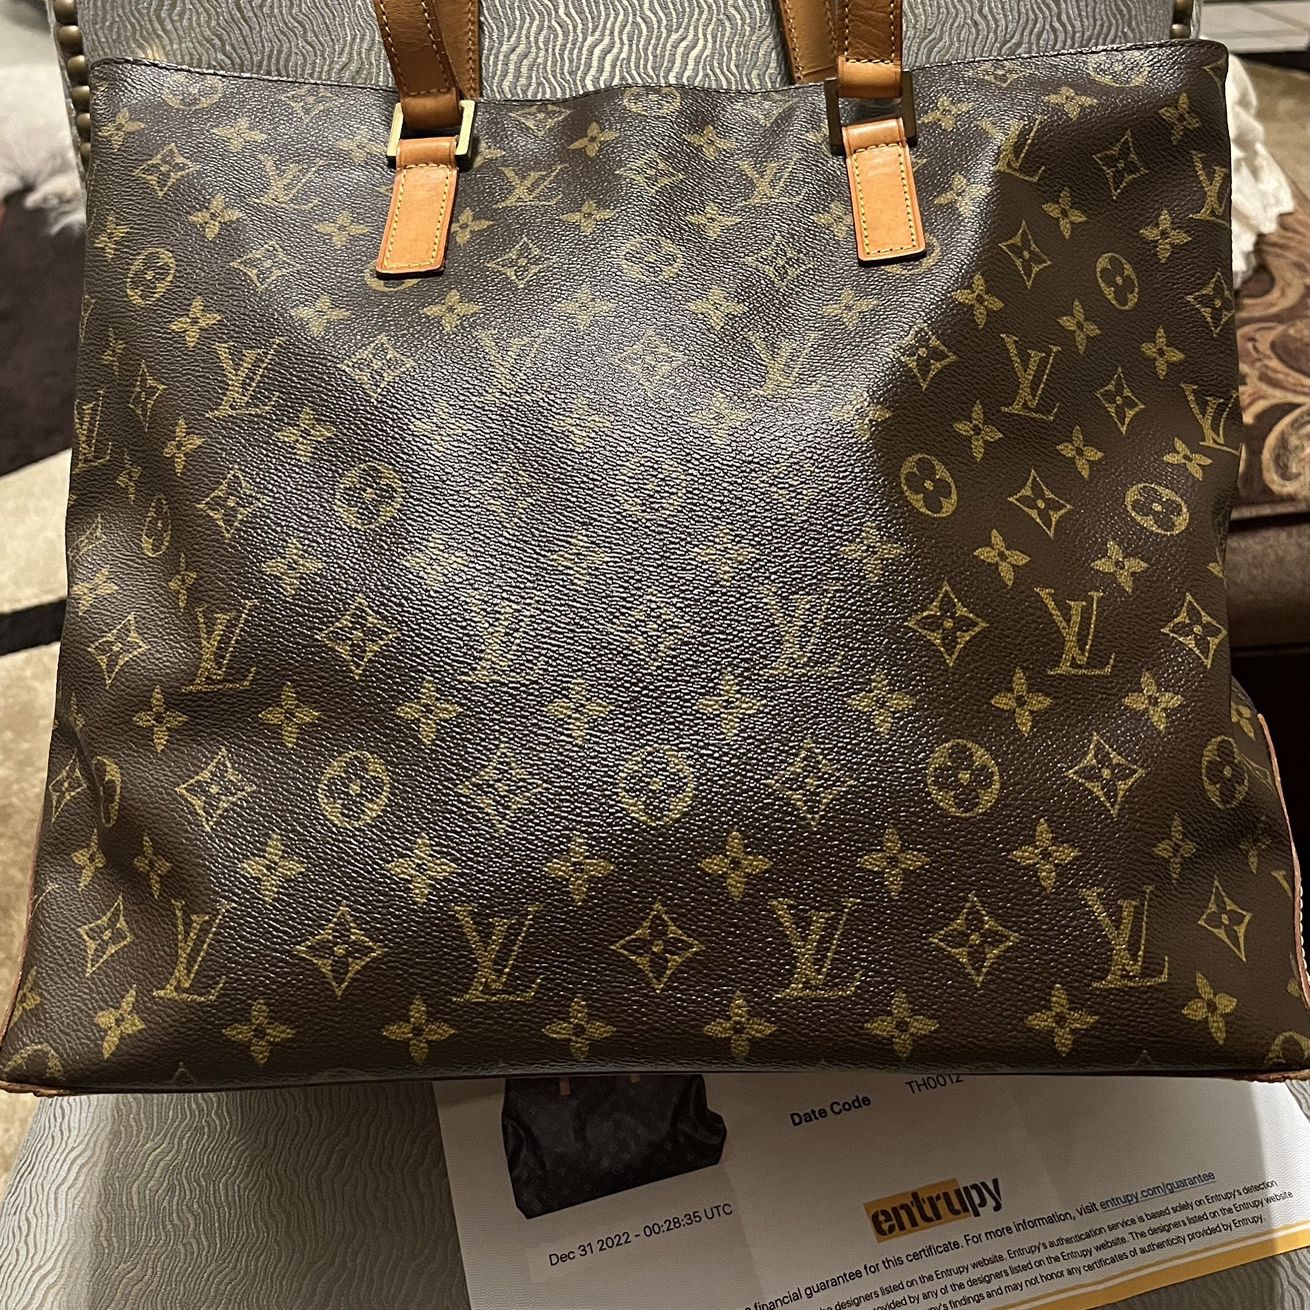 Authentic Louis Vuitton Monogram Cabas Mezzo Tote/Shoulder Bag